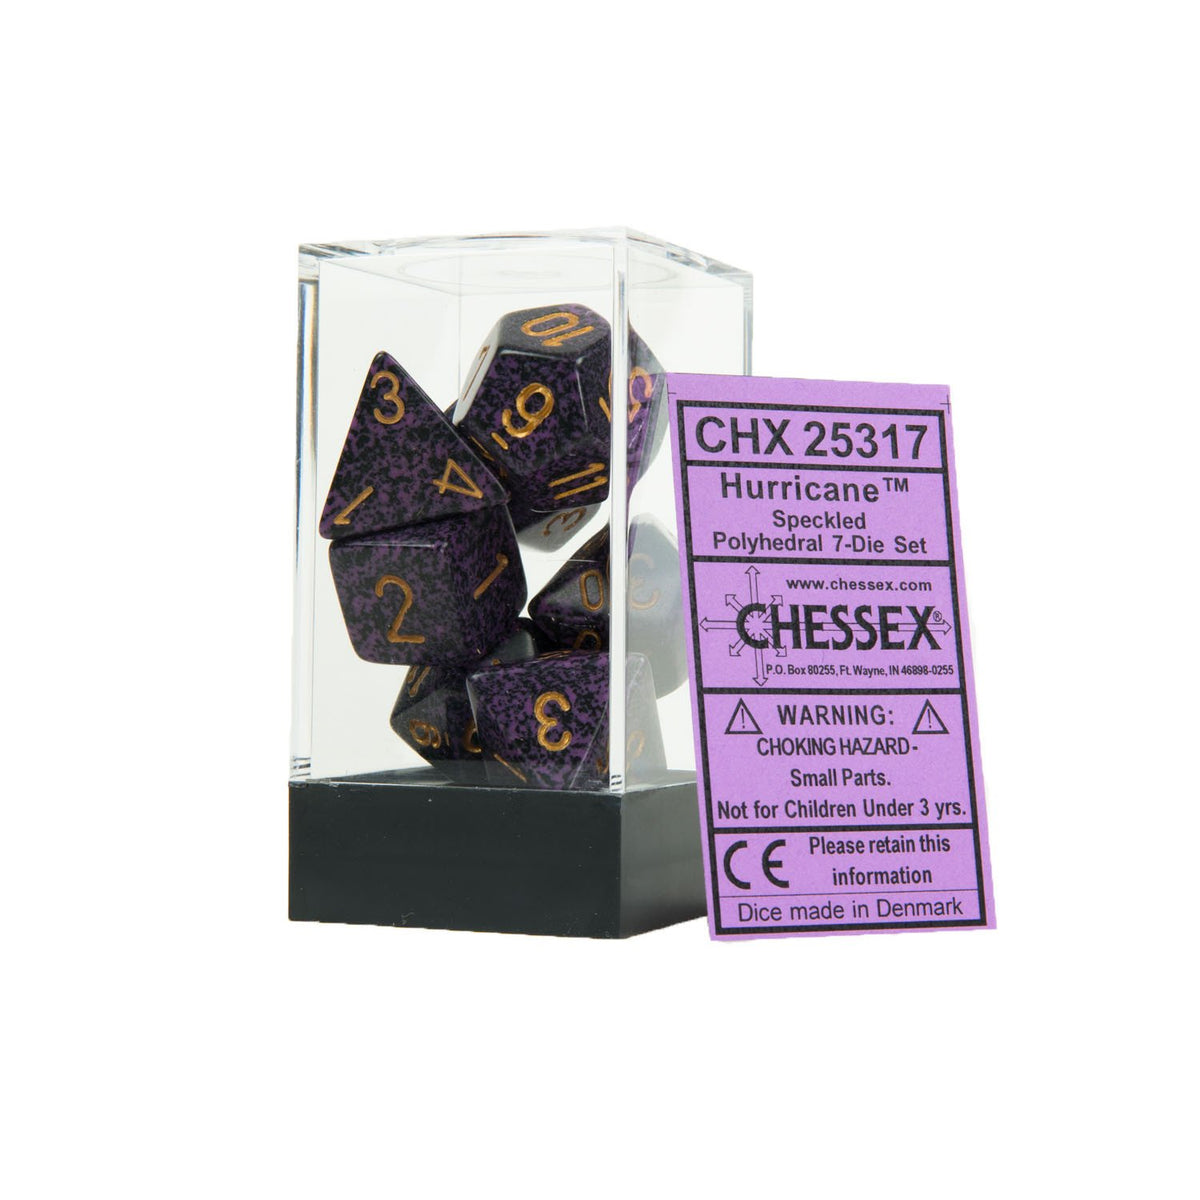 Chessex - Speckled Polyhedral 7-Die Set - Hurricane (CHX25317)